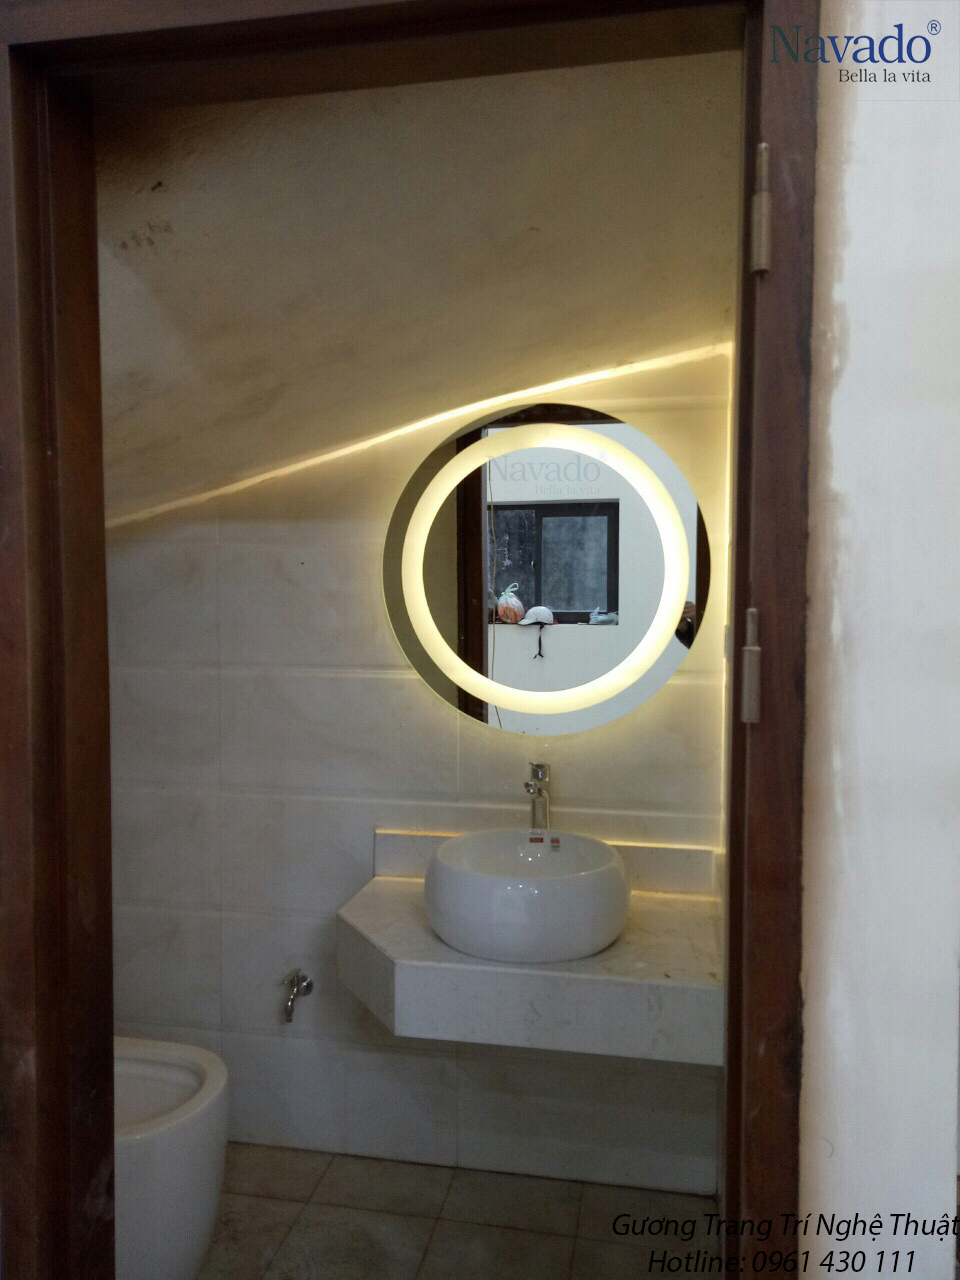 Gương nhà tắm cao cấp đèn led Navado:
Gương nhà tắm cao cấp đèn led Navado là lựa chọn hoàn hảo để nâng tầm không gian tắm của bạn. Với ánh sáng led trắng tinh khôi và thiết kế độc đáo, chiếc gương sẽ làm cho không gian tắm của bạn trở nên đẳng cấp và sang trọng. Hãy đến và trải nghiệm ngay hôm nay để tận hưởng những tính năng tiên tiến của sản phẩm!